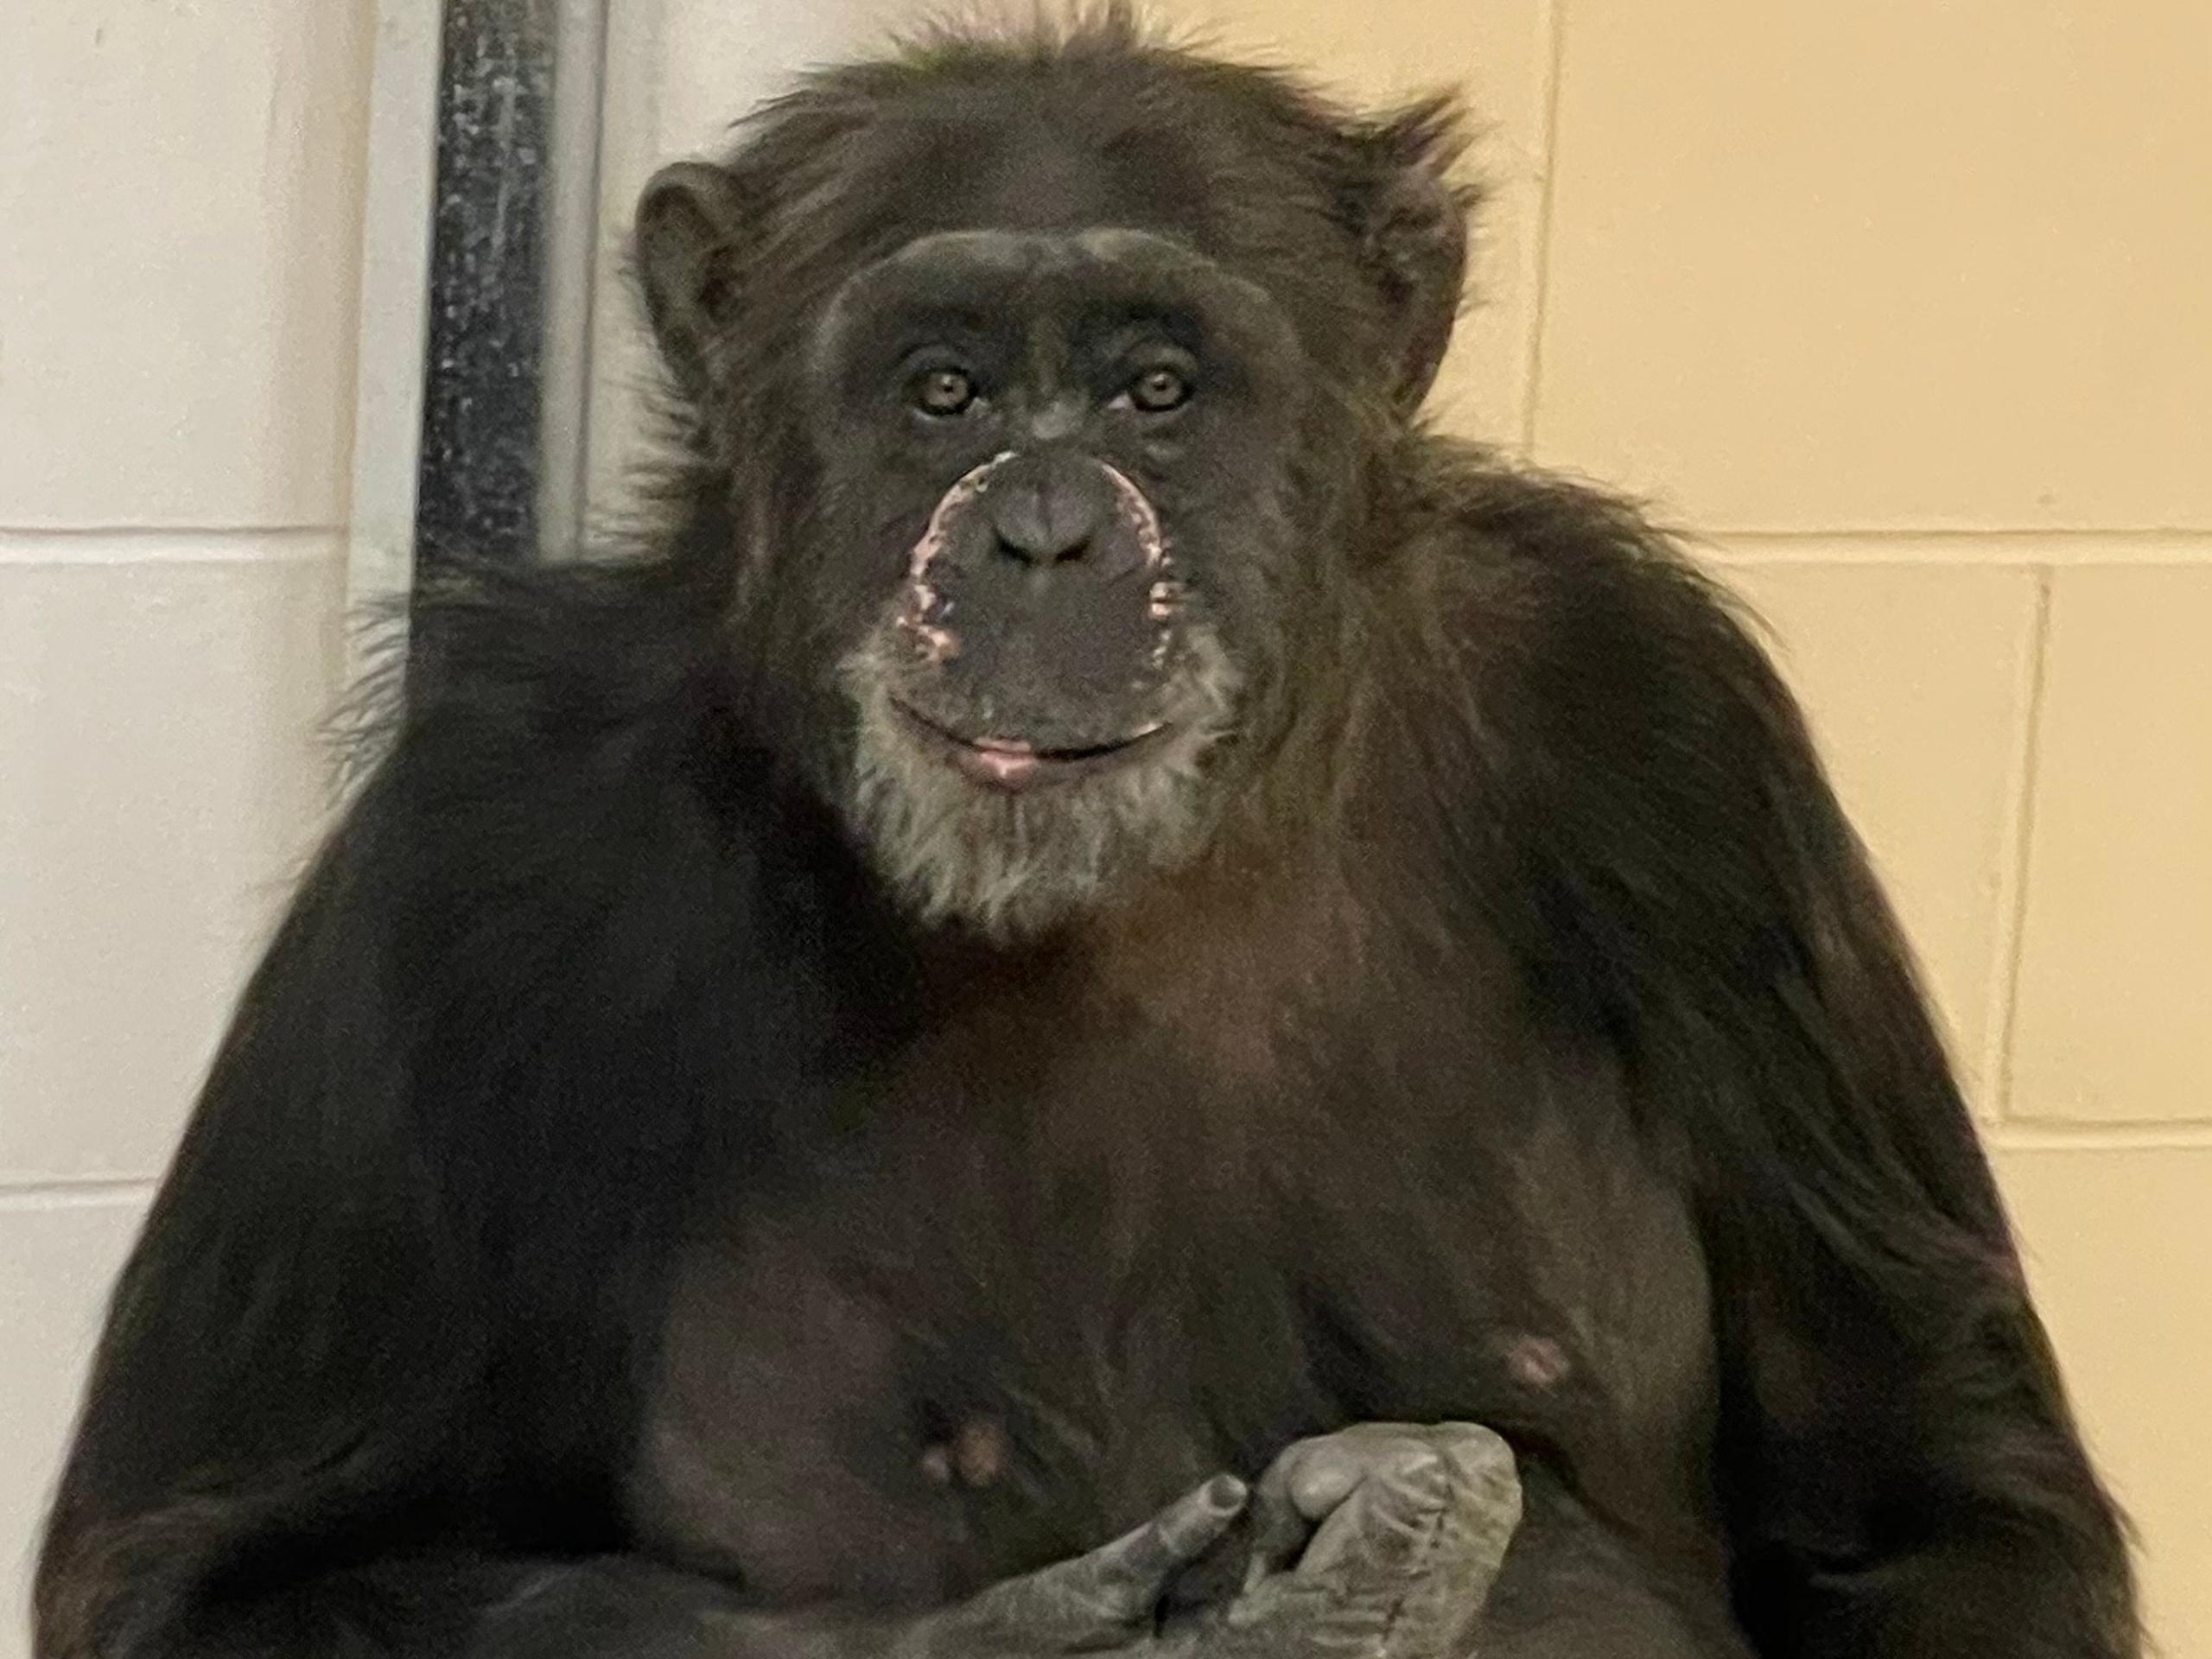 Mara, la chimpancé de más de 30 años de edad, se encuentra "activa y curiosa" en un santuario del Zoológico de Indianápolis.